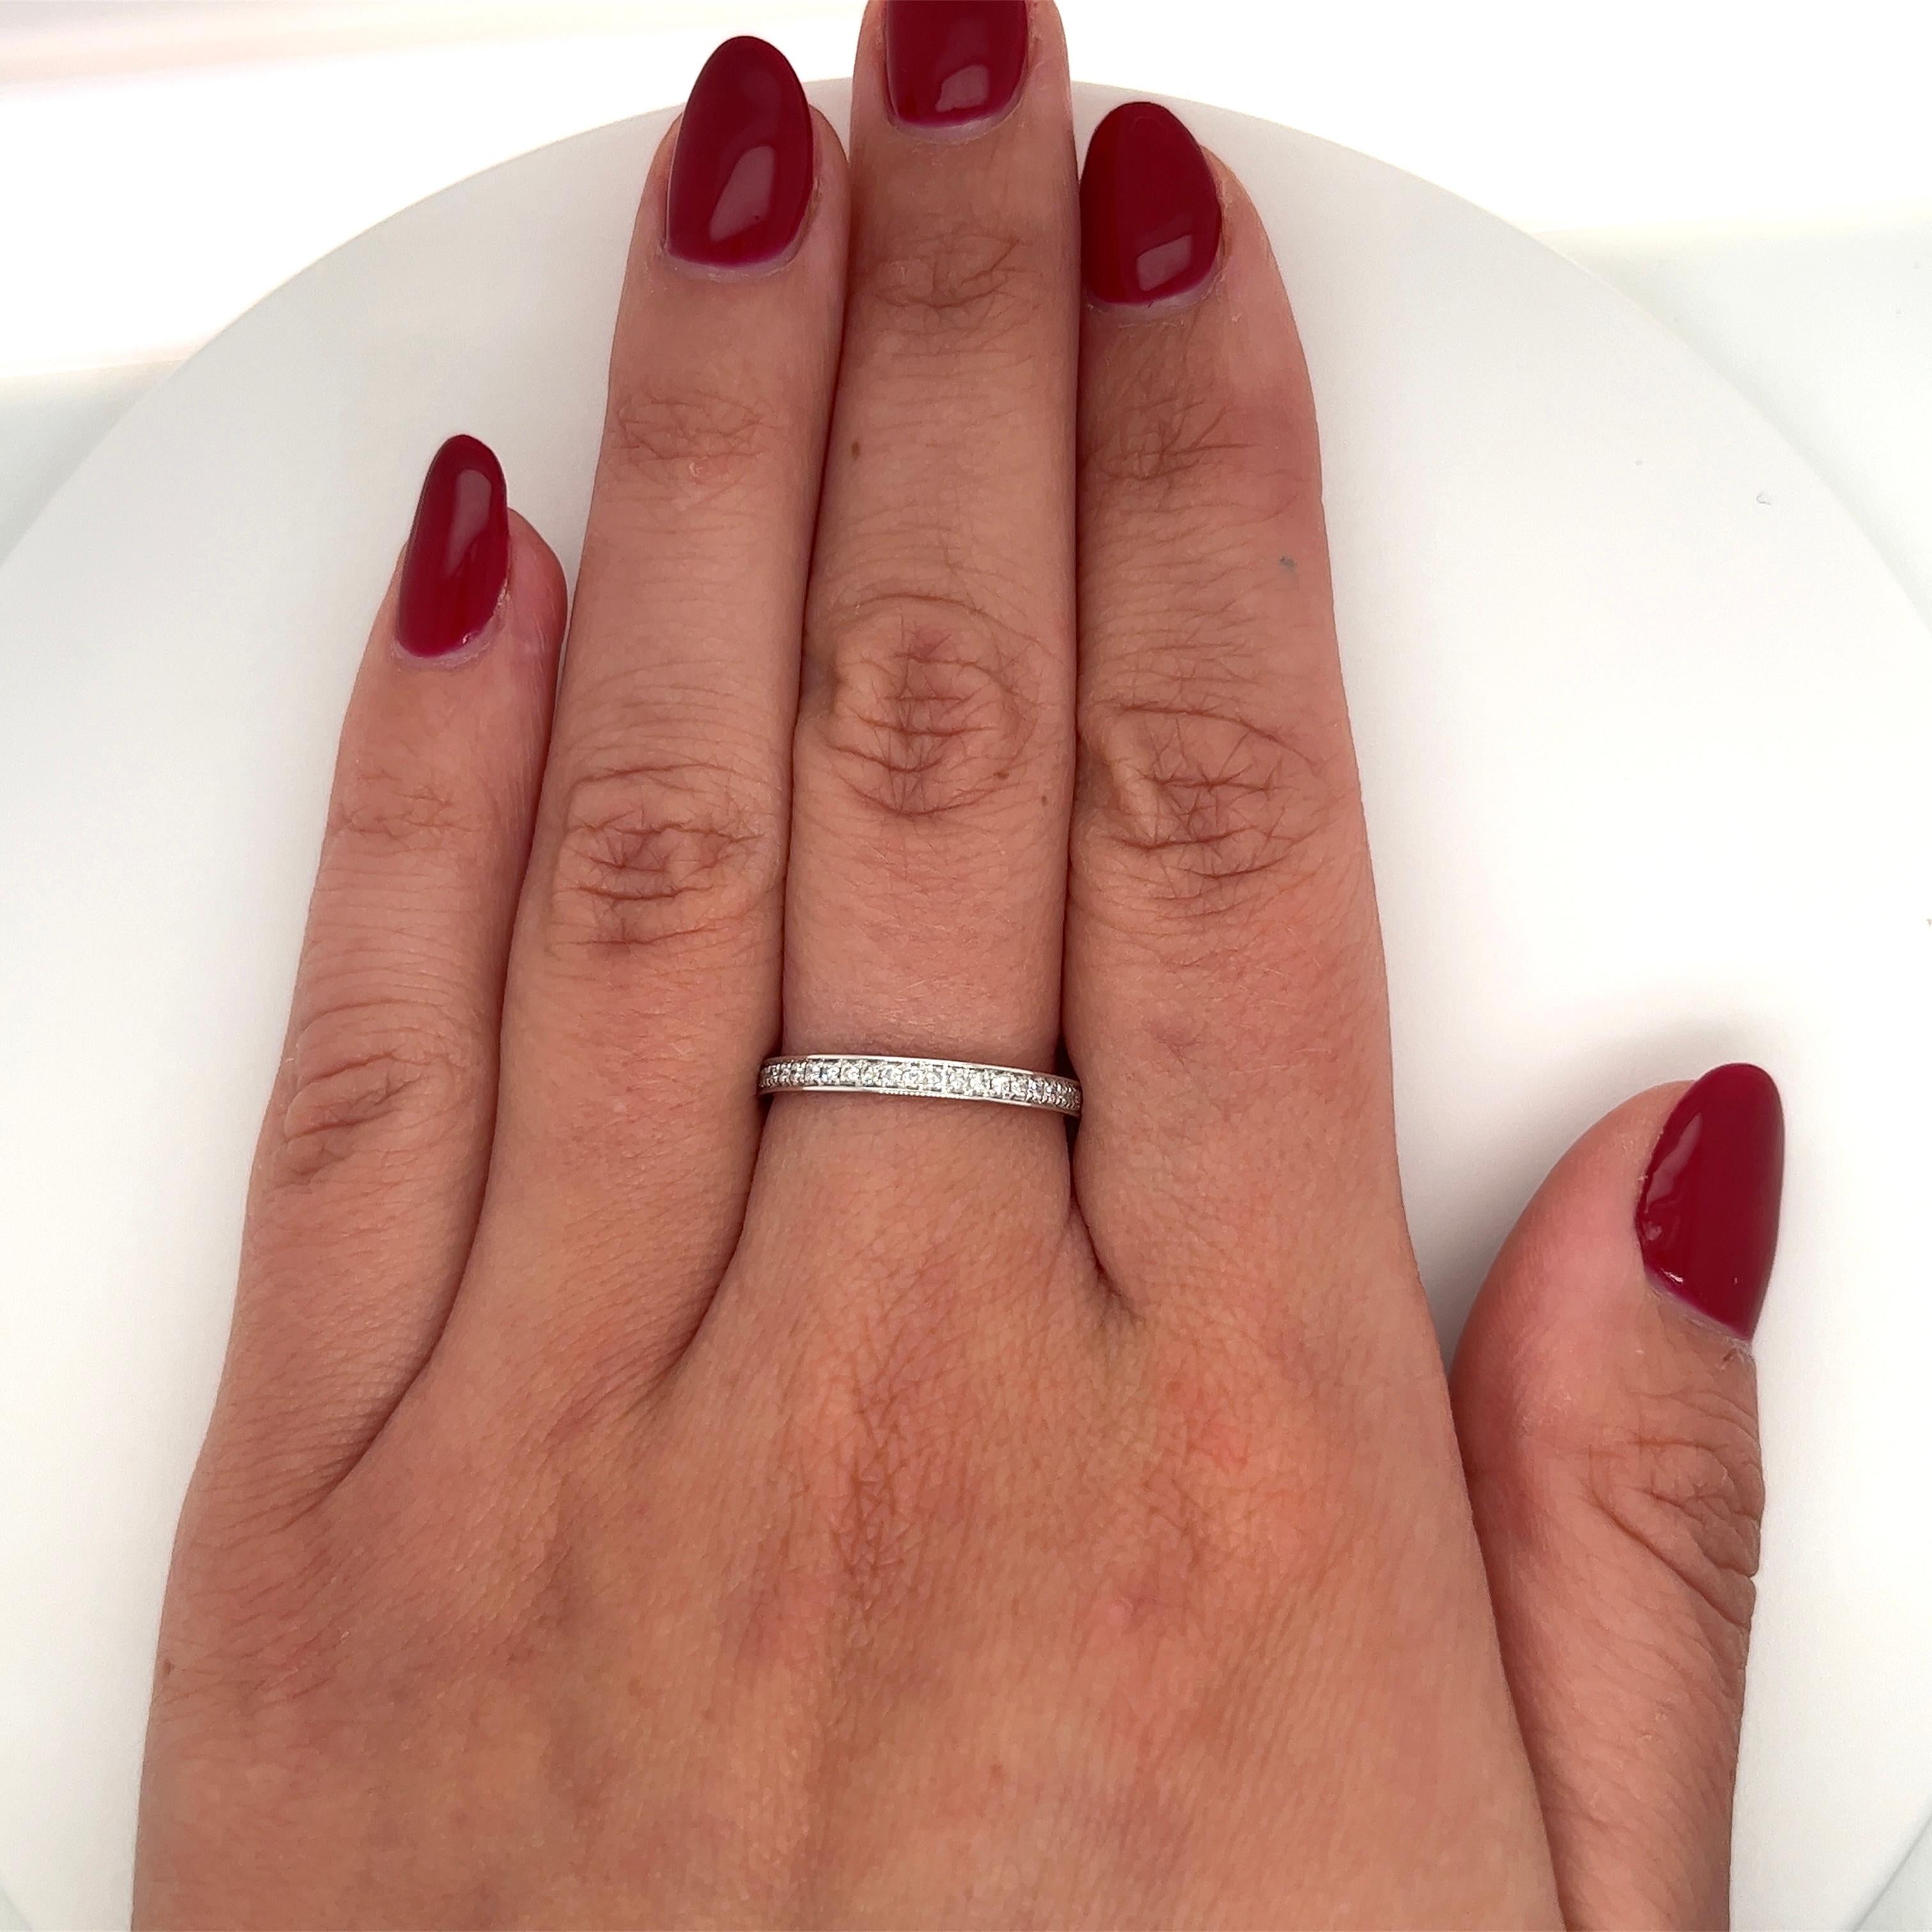 Simple, chic, et plein de grâce. Cet anneau éternel de mariage en diamant naturel est serti dans un or blanc 18 carats lisse qui glisse sur le doigt comme du beurre. Double plaquage rhodium pour une brillance et un éclat optimaux. 

Certificat